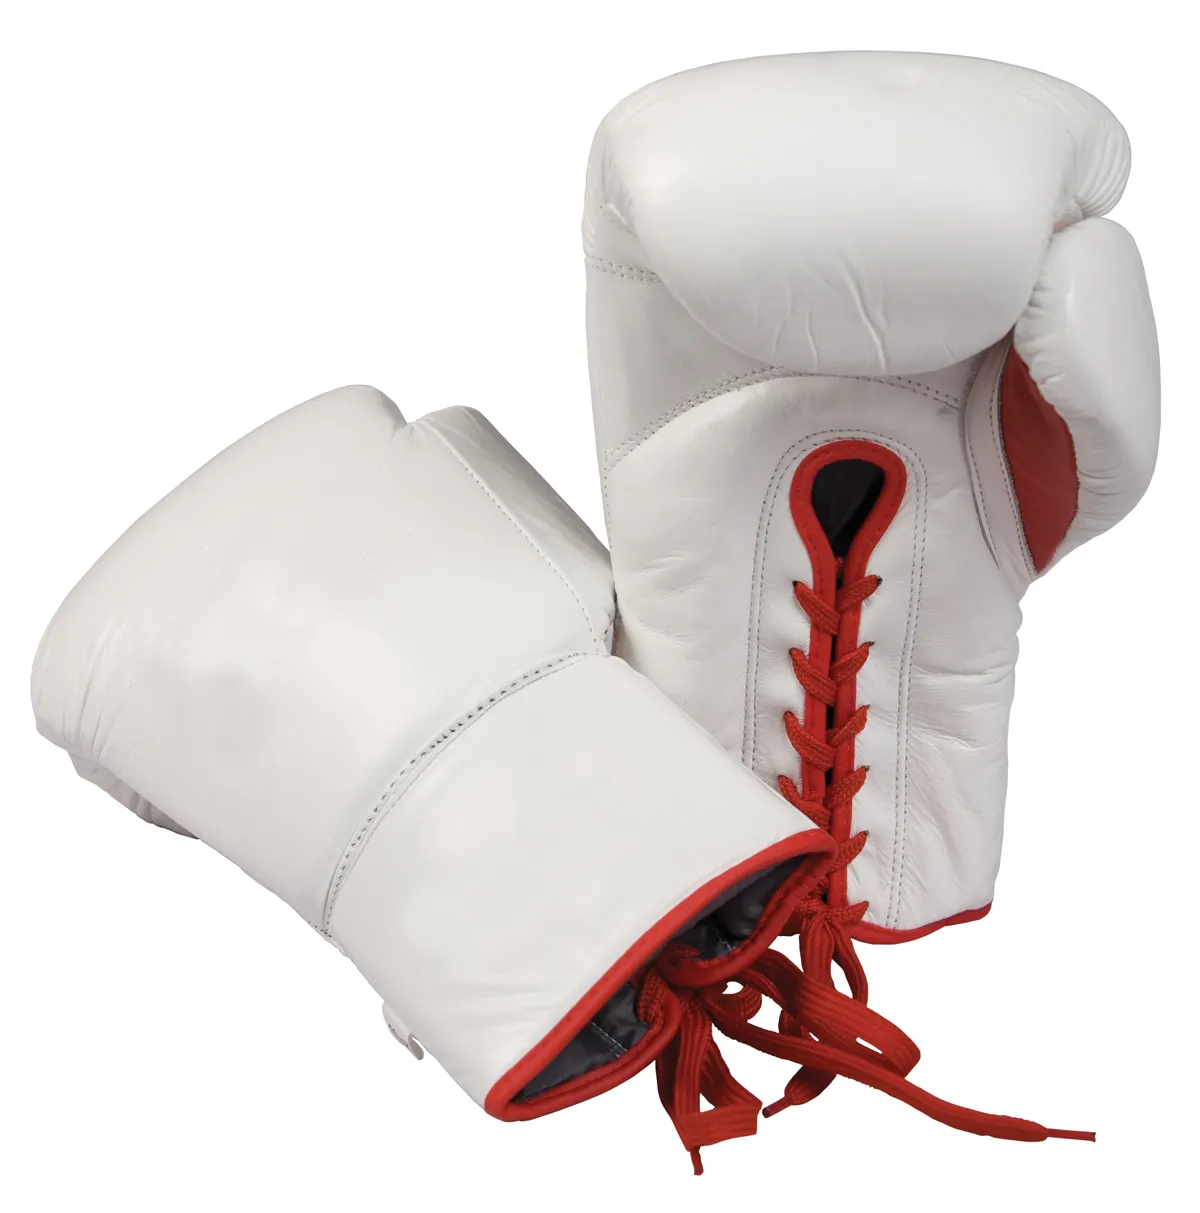 Direct Factory Großhandel Günstige MMA Personal isierte Box handschuhe/Taschen handschuhe Größeres Bild anzeigen Zum CompareShare-Kampf hinzufügen